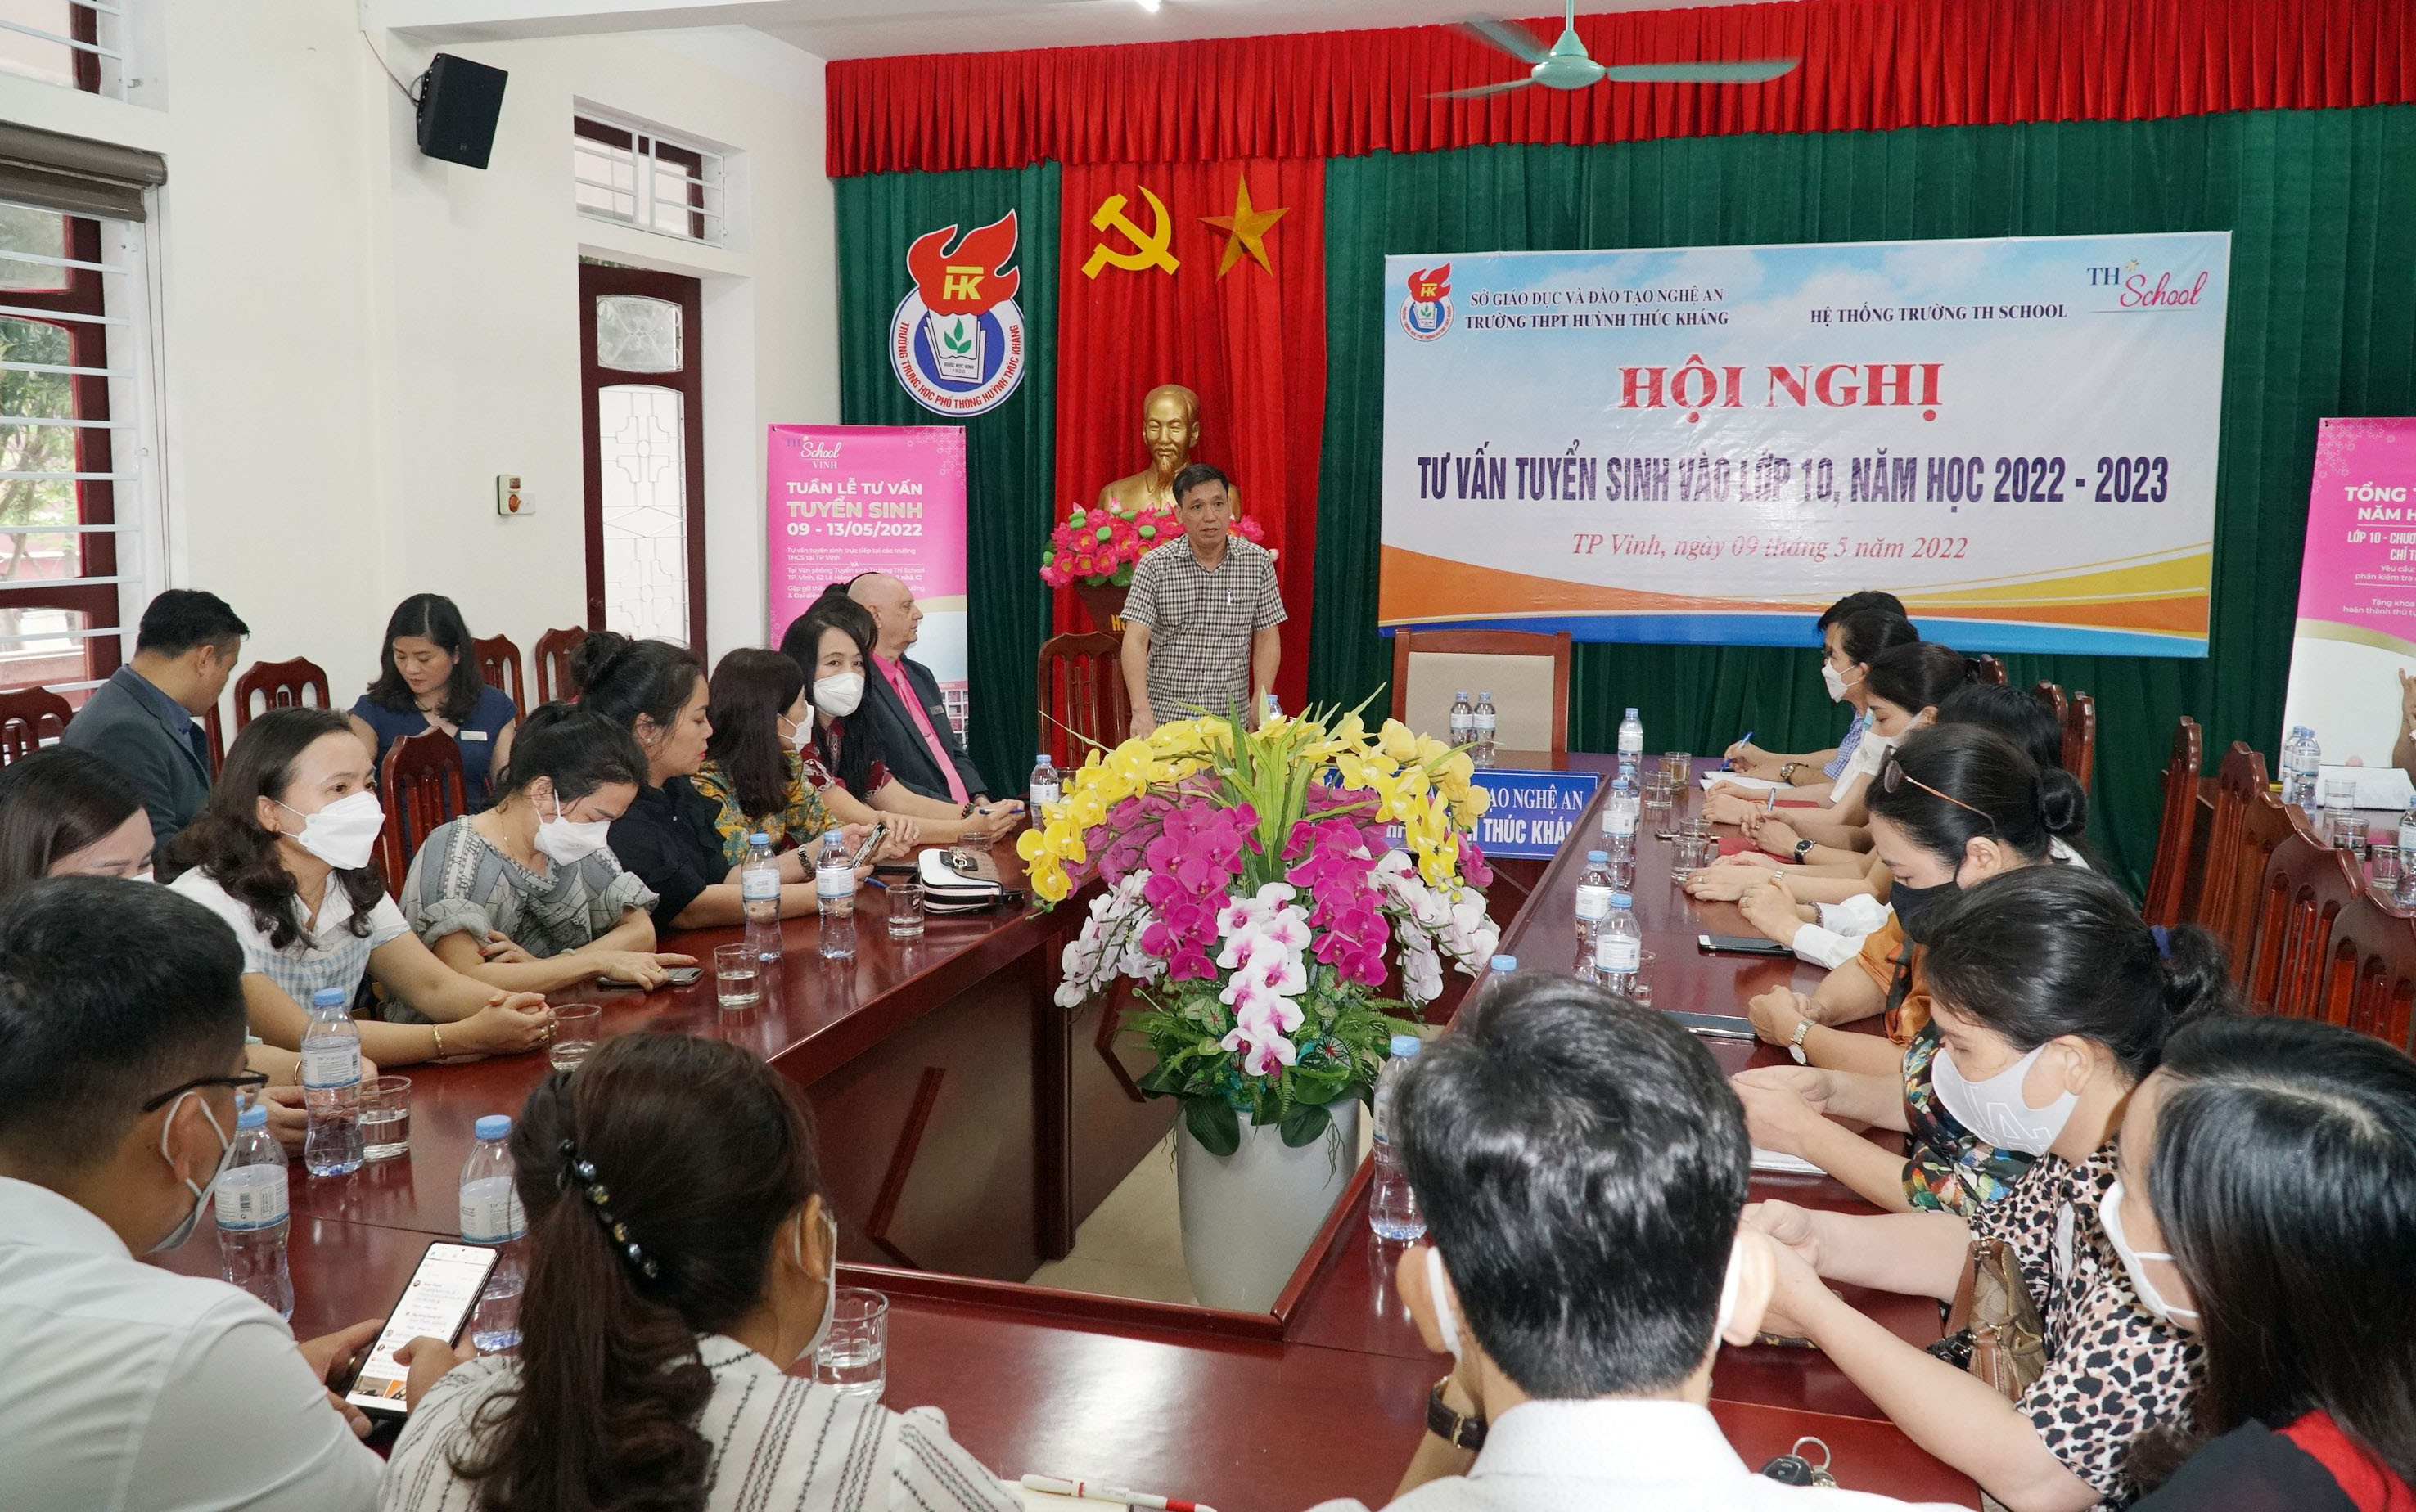 Thầy giáo Phan Xuân Phàn - Hiệu trưởng Trường THPT Huỳnh Thúc Kháng giới thiệu về các phương thức tuyển sinh lớp 10 của nhà trường. Ảnh: MH